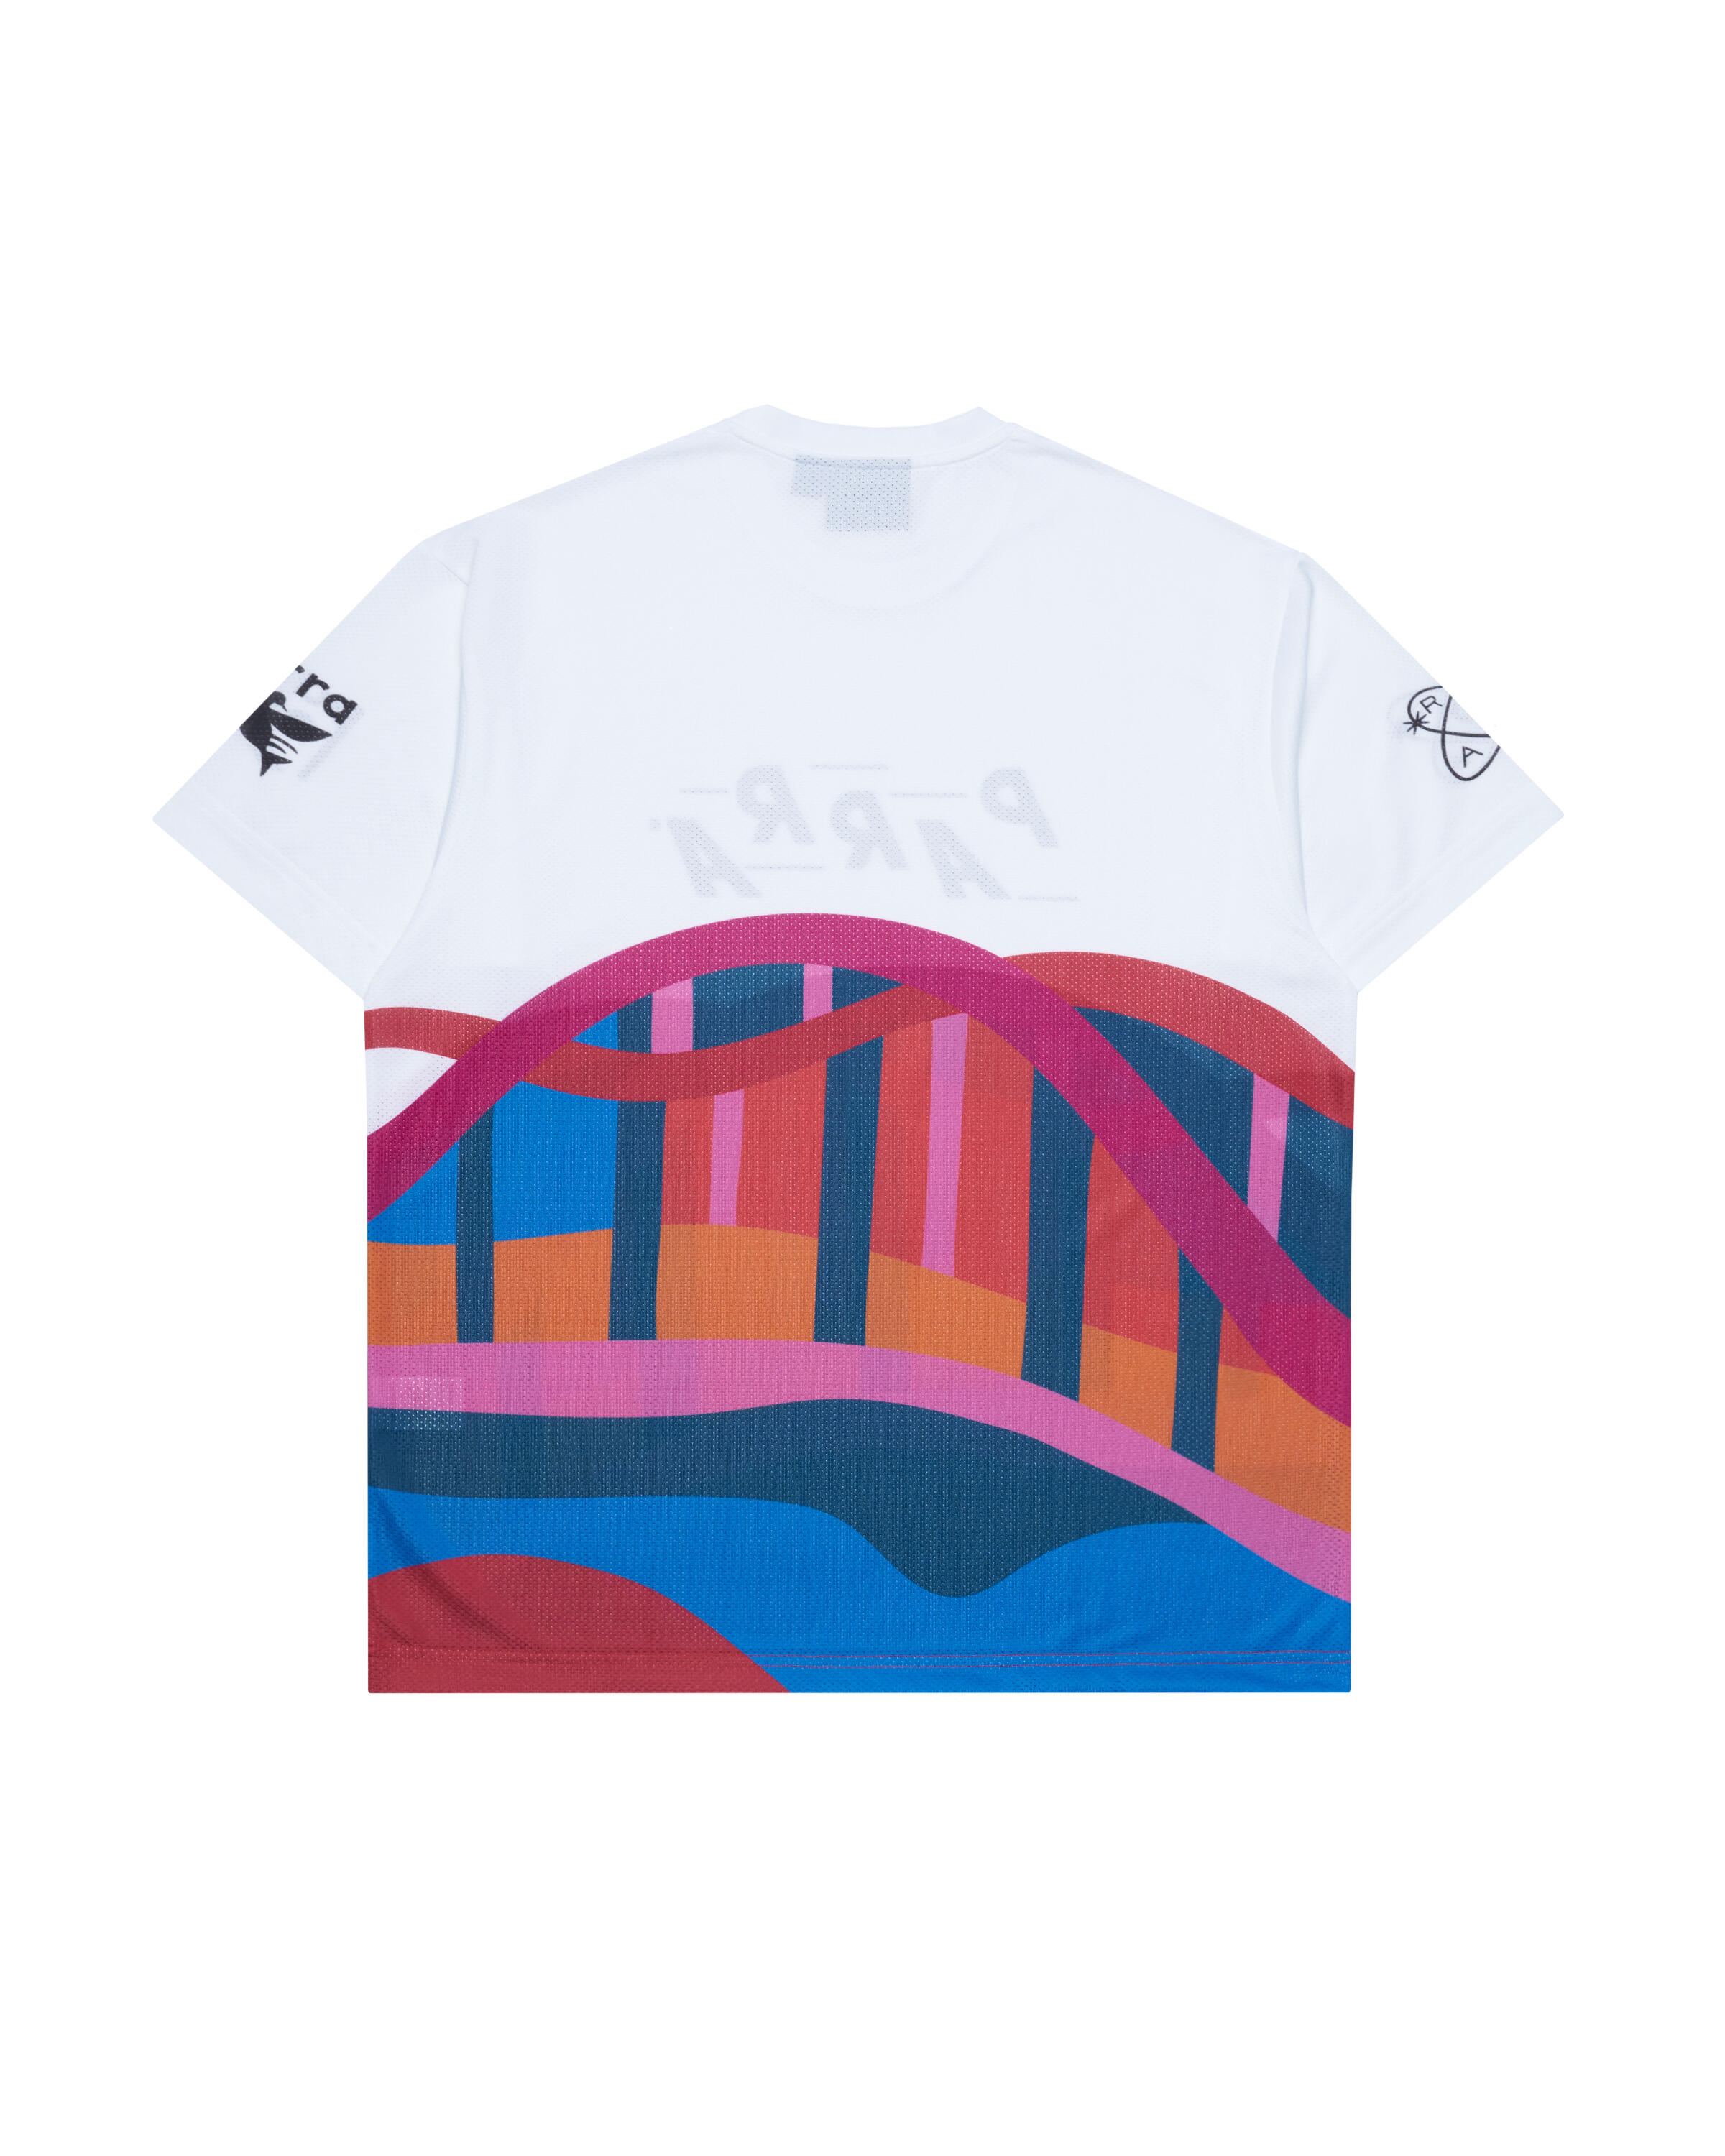 by Parra sports bridge mesh t-shirt